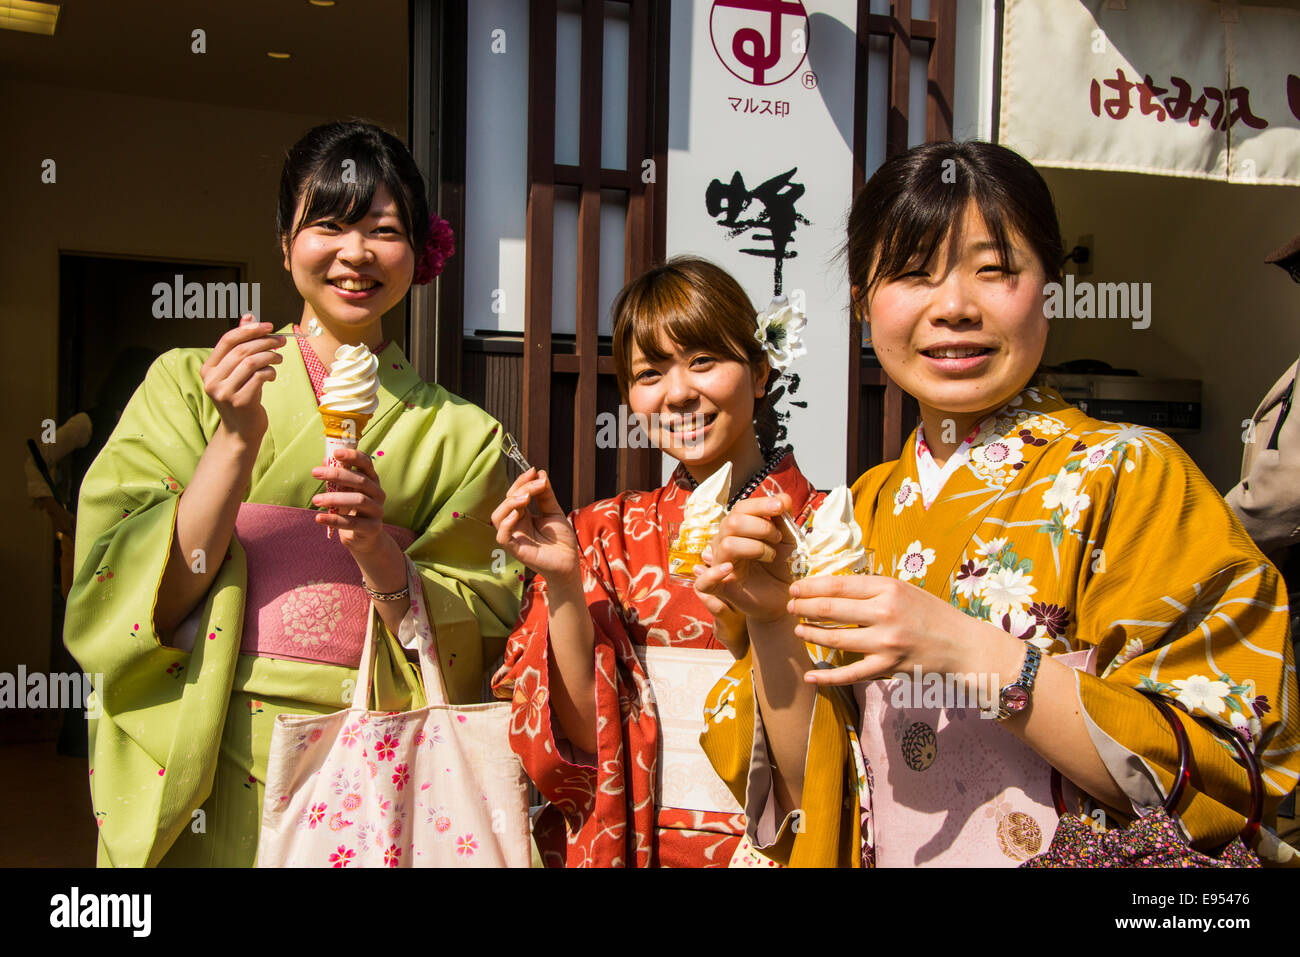 Tradizionalmente le ragazze vestiti di mangiare gelato, Kyoto, Giappone Foto Stock